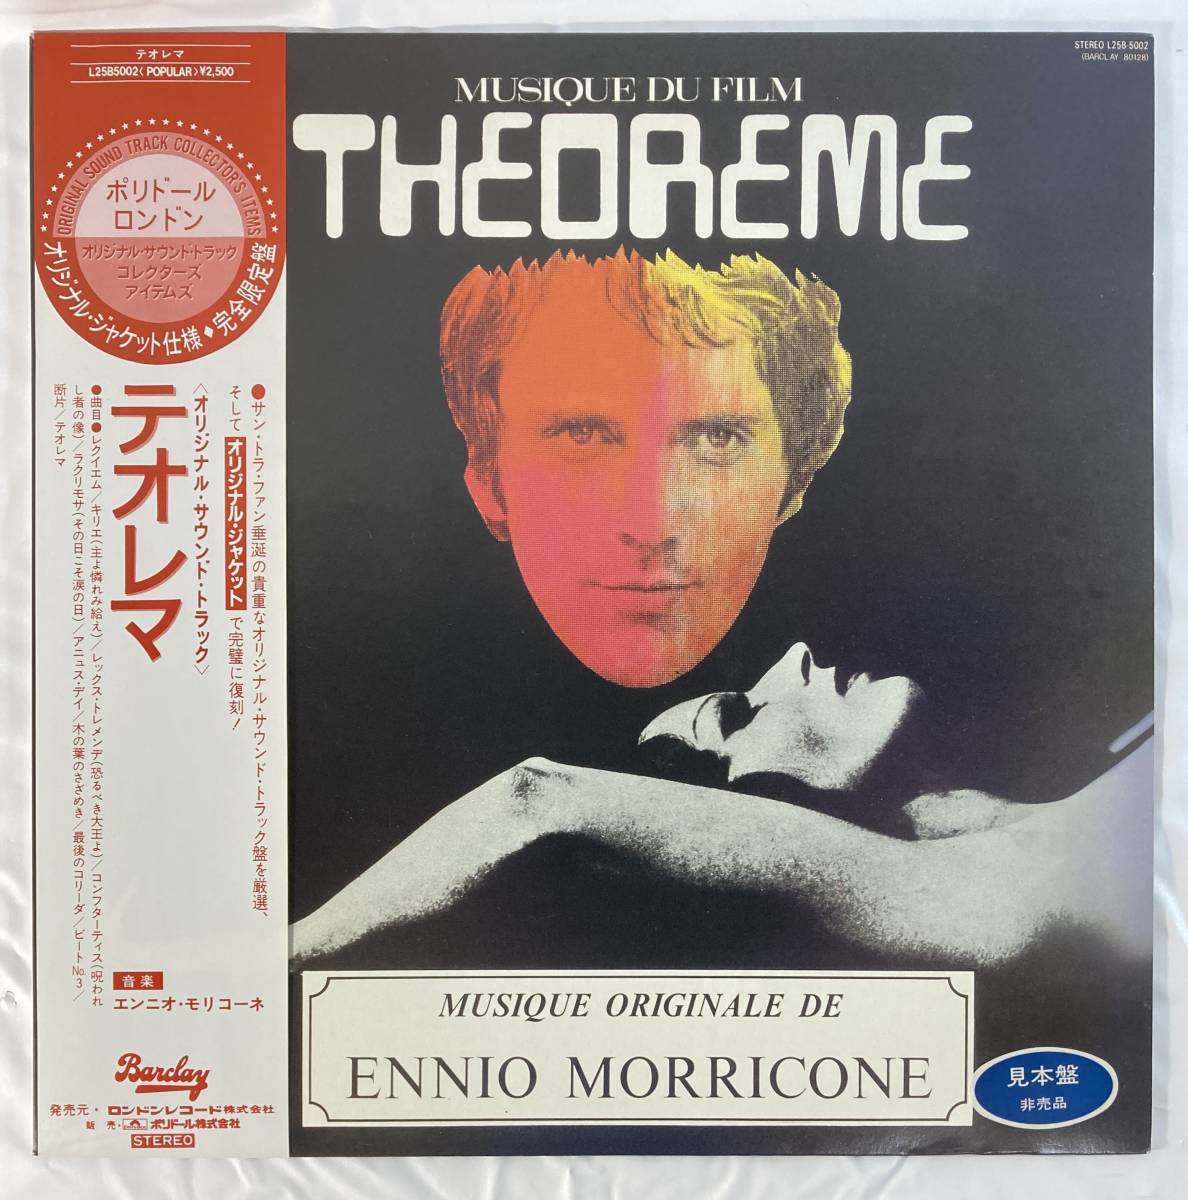 テオレマ (1968) エンニオ・モリコーネ 国内盤LP PO L25B 5002 STEREO Promo 未使用 帯付き_画像1